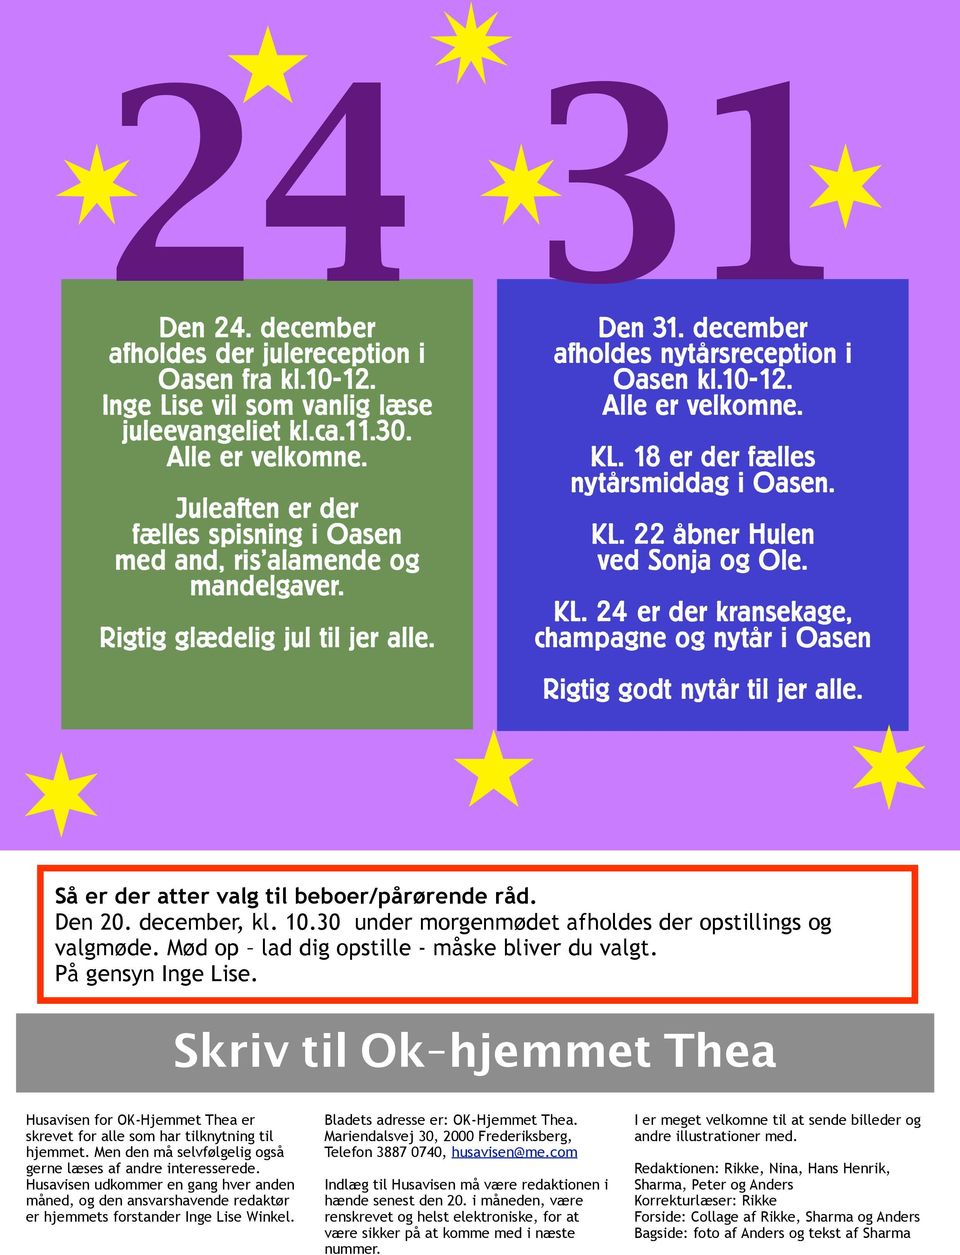 18 er der fælles nytårsmiddag i Oasen. KL. 22 åbner Hulen ved Sonja og Ole. KL. 24 er der kransekage, champagne og nytår i Oasen Rigtig godt nytår til jer alle.